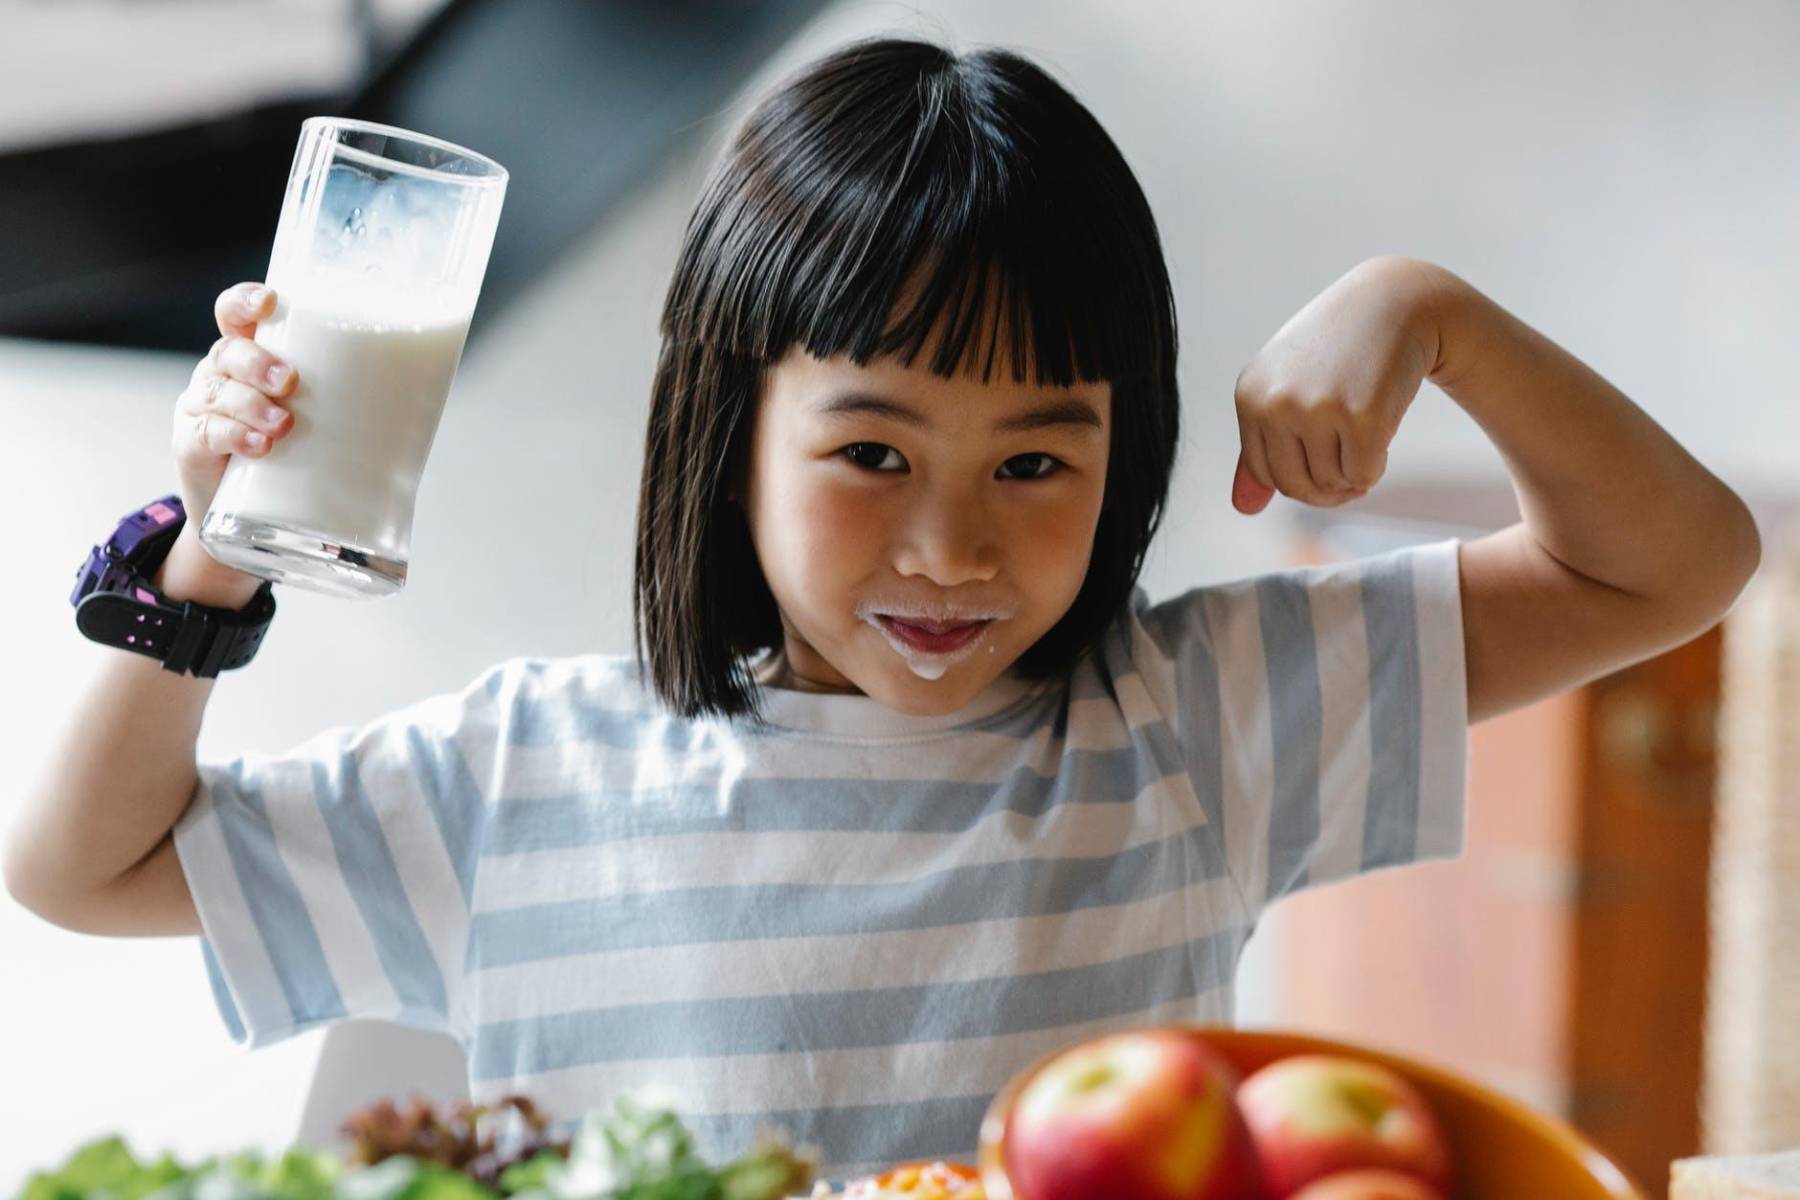 Beneficios de la leche de Almendras